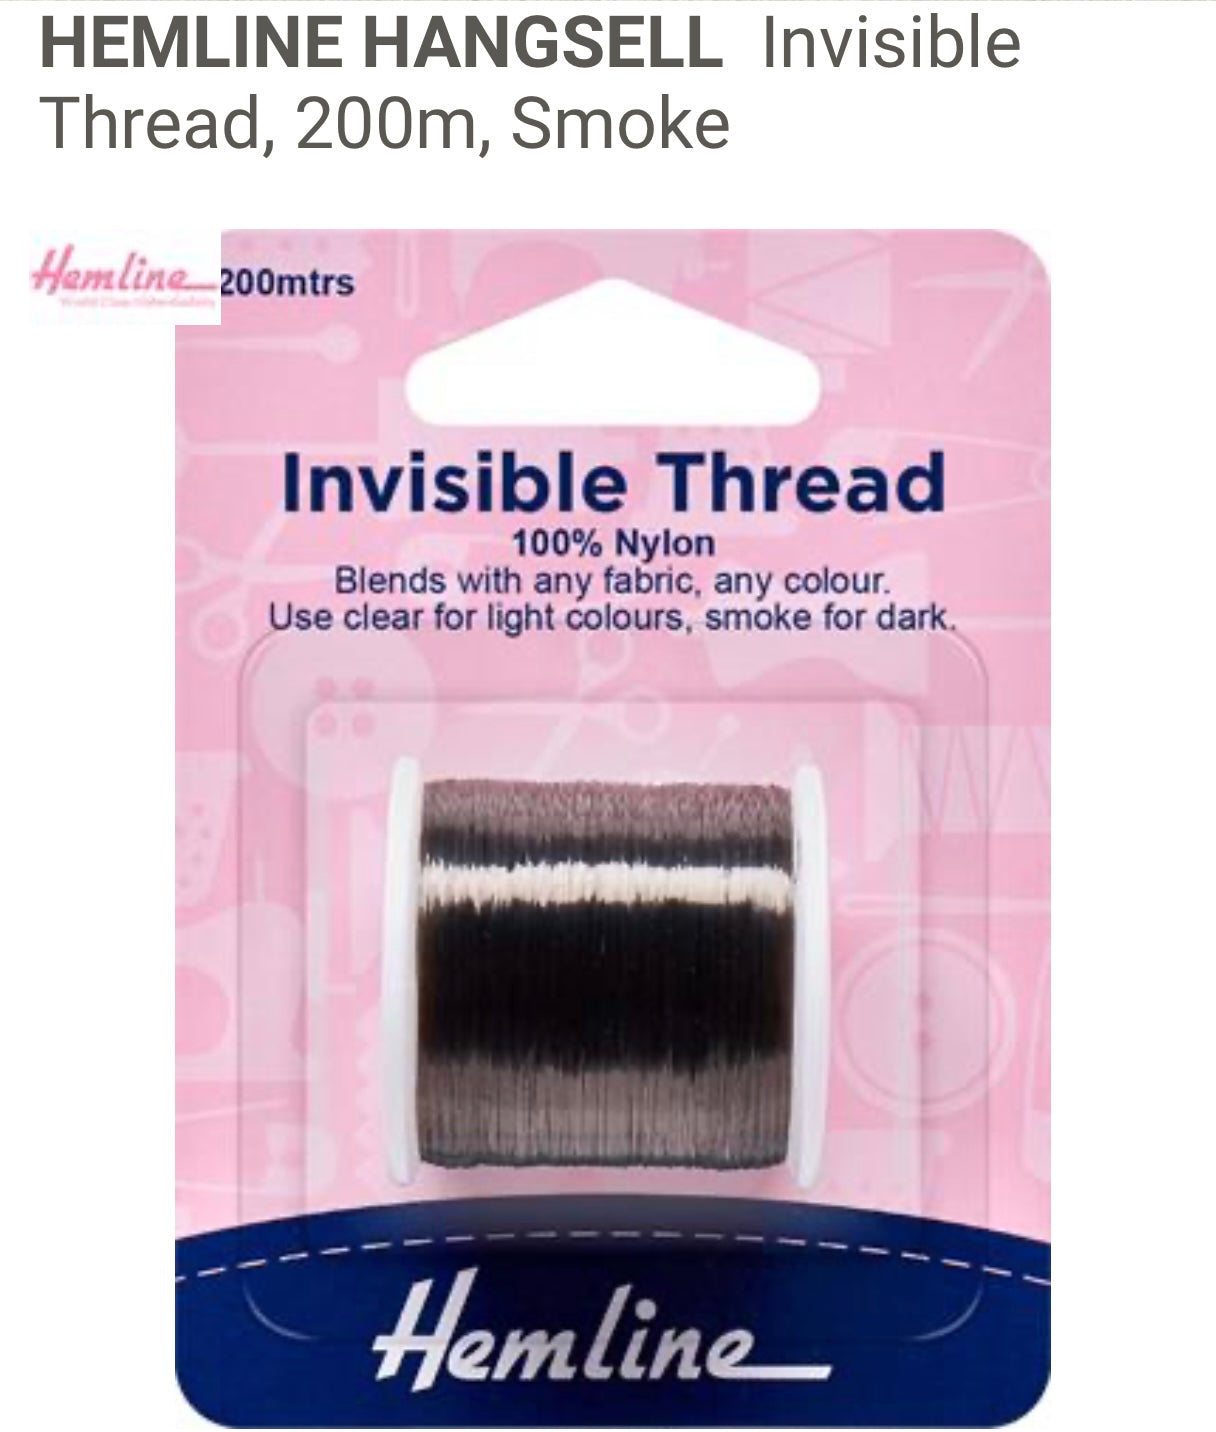 Invisible Thread Smoke